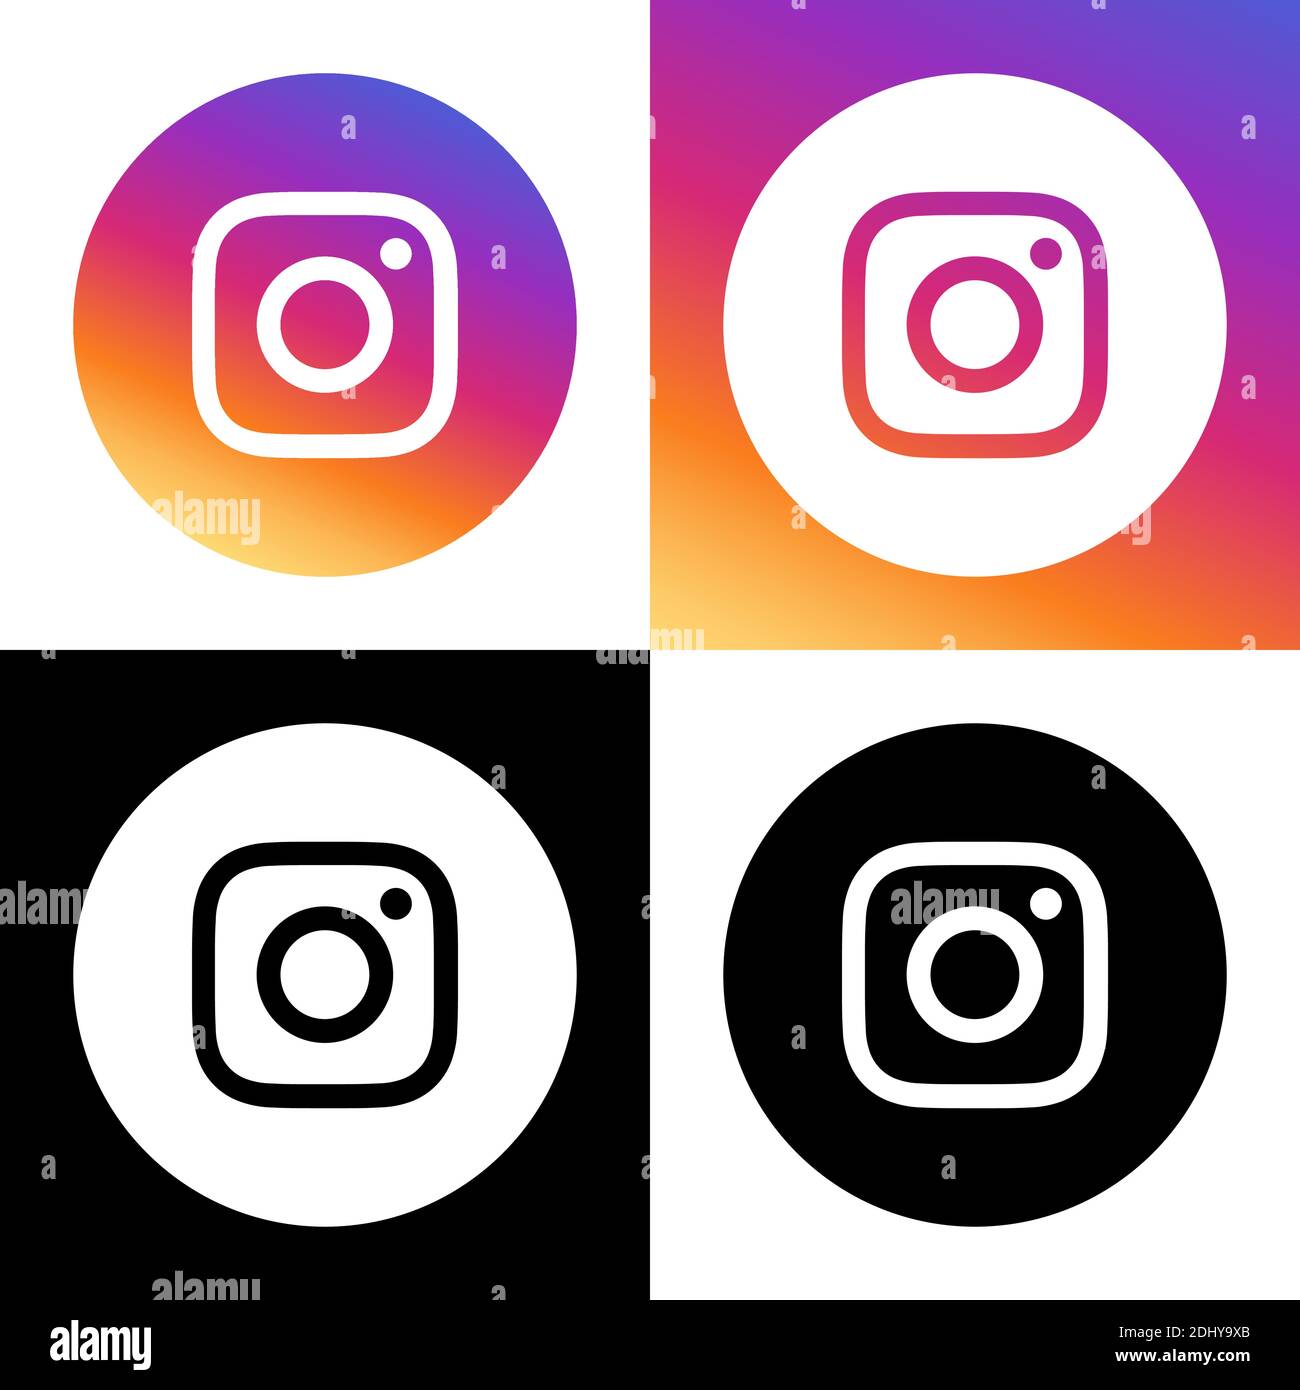 Logo Instagram là biểu tượng mang lại rất nhiều niềm vui cho người dùng trên toàn thế giới. Nhấp chuột vào hình ảnh liên quan để xem những bức ảnh đẹp và cập nhật những tin tức mới nhất về mạng xã hội phổ biến này.